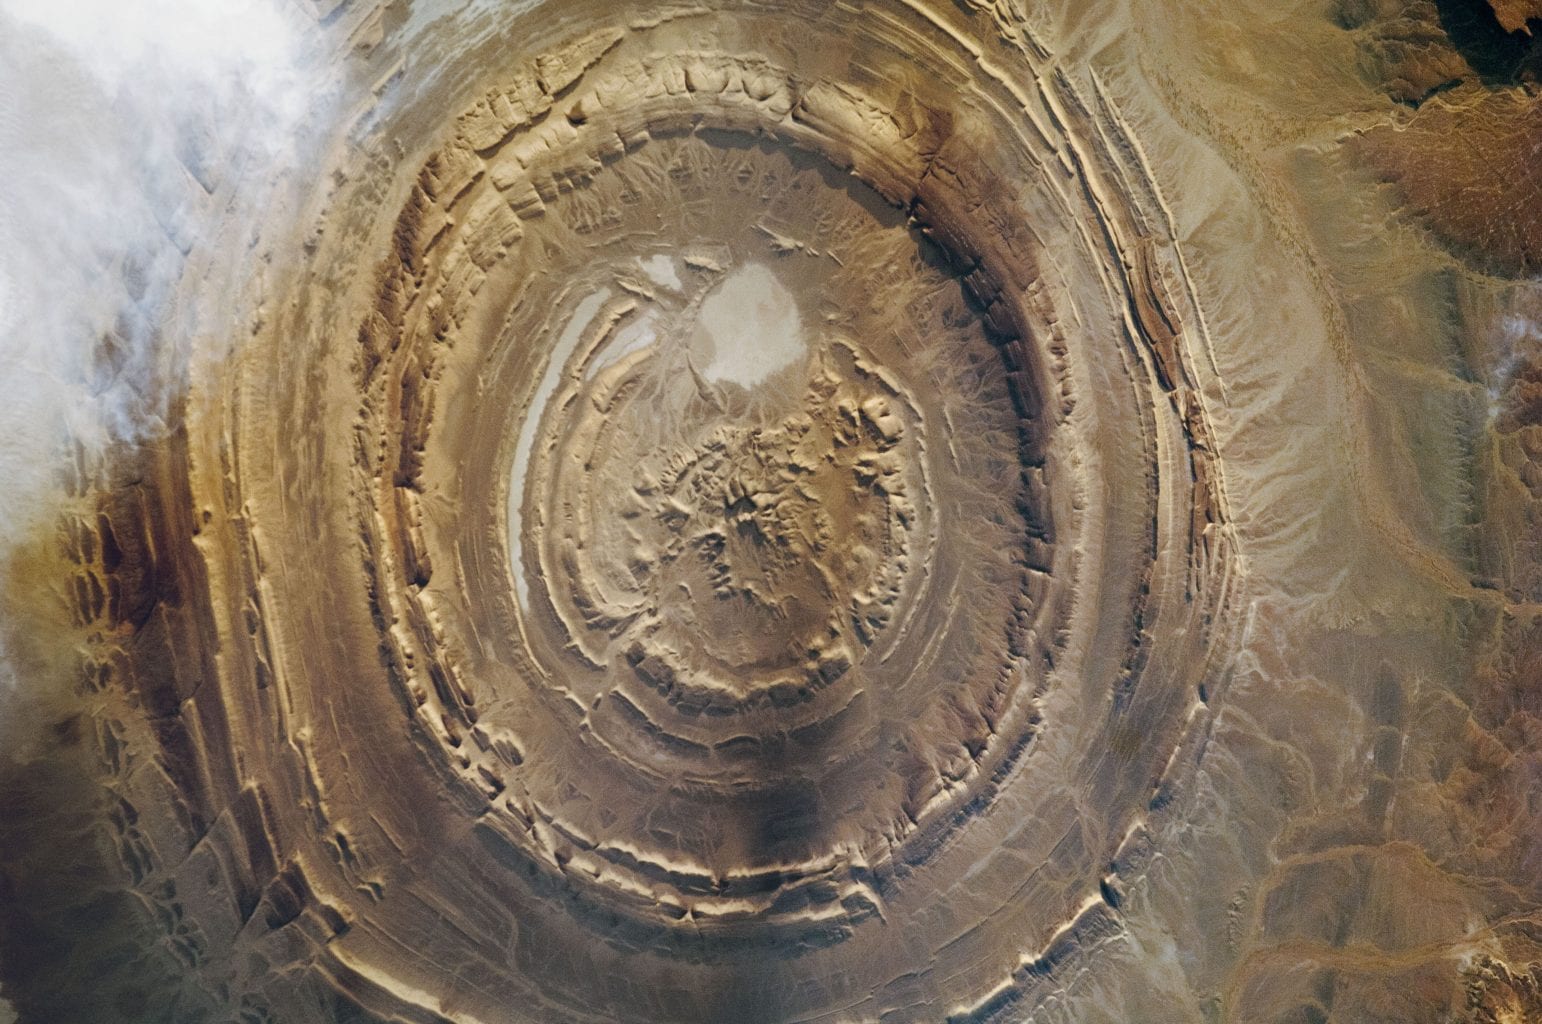 Astronautfoto van de Richat-structuur met versterkt contract dat de geologische kenmerken van de formatie onthult. Krediet: NASA